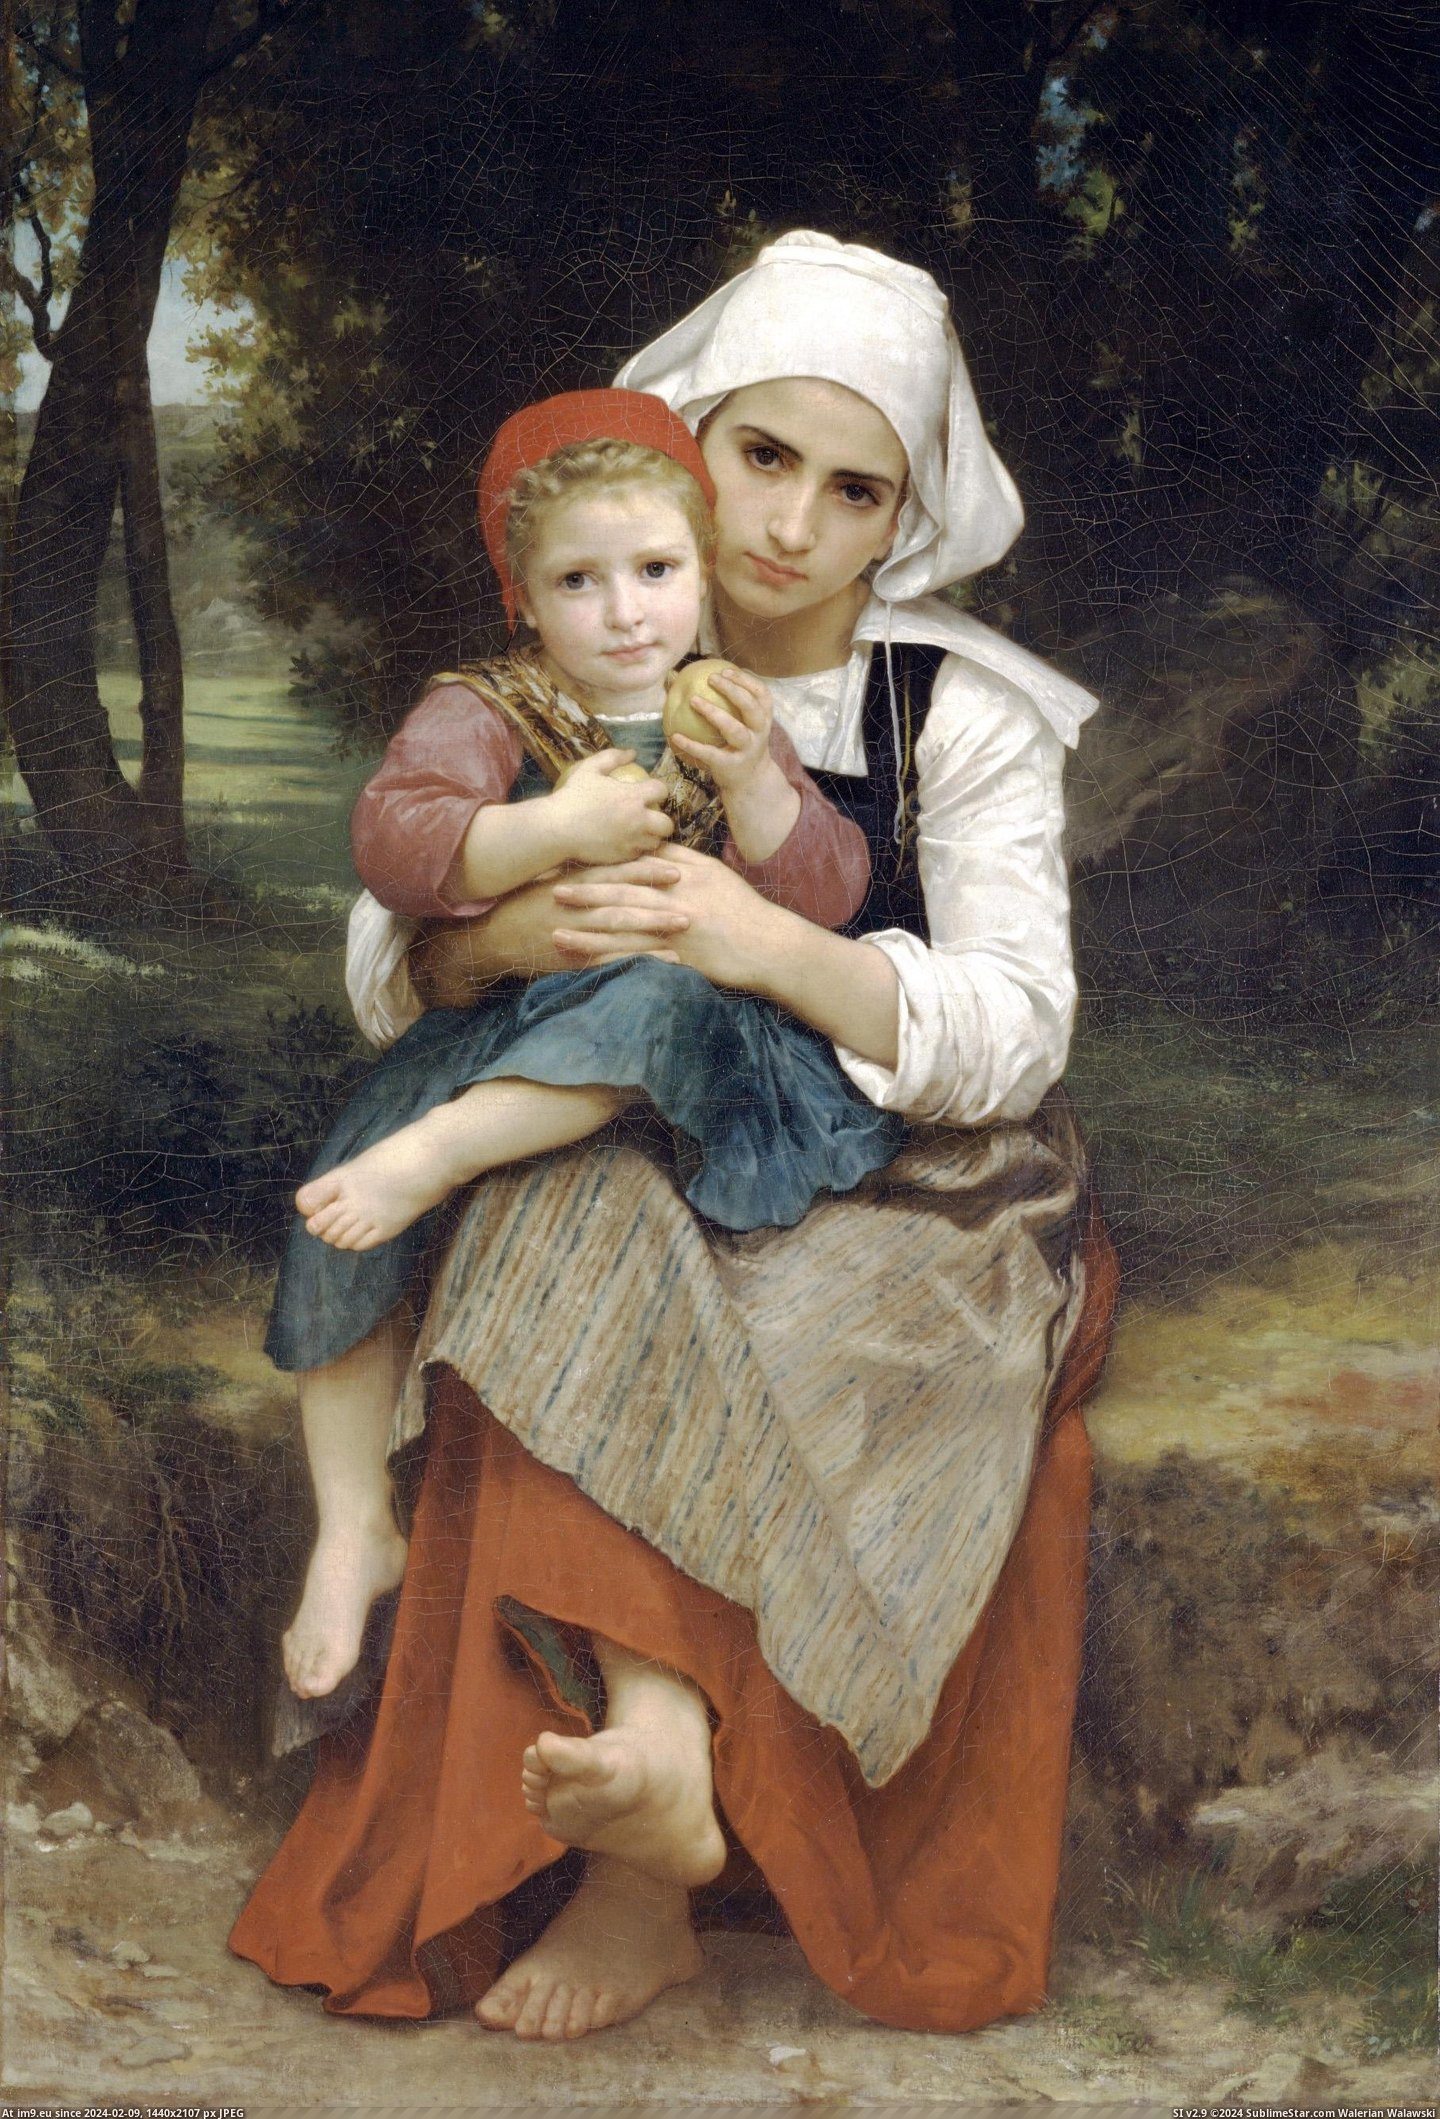 (1871) Frere Et Sour Bretons - William Adolphe Bouguereau (in William Adolphe Bouguereau paintings (1825-1905))